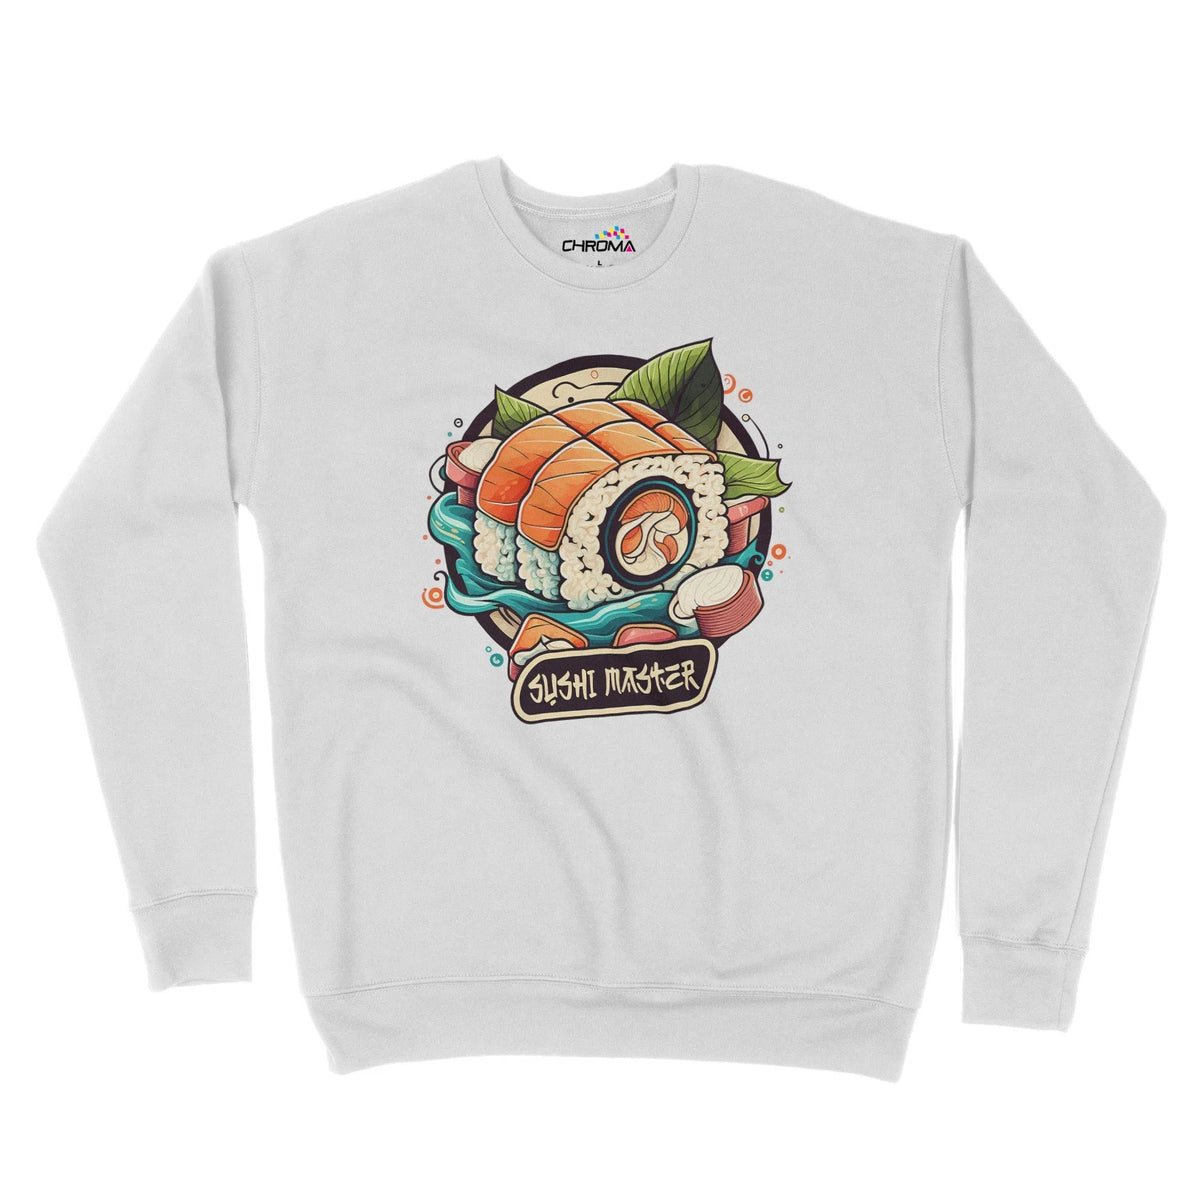 Sushi Master Unisex Adult Sweatshirt Chroma Clothing